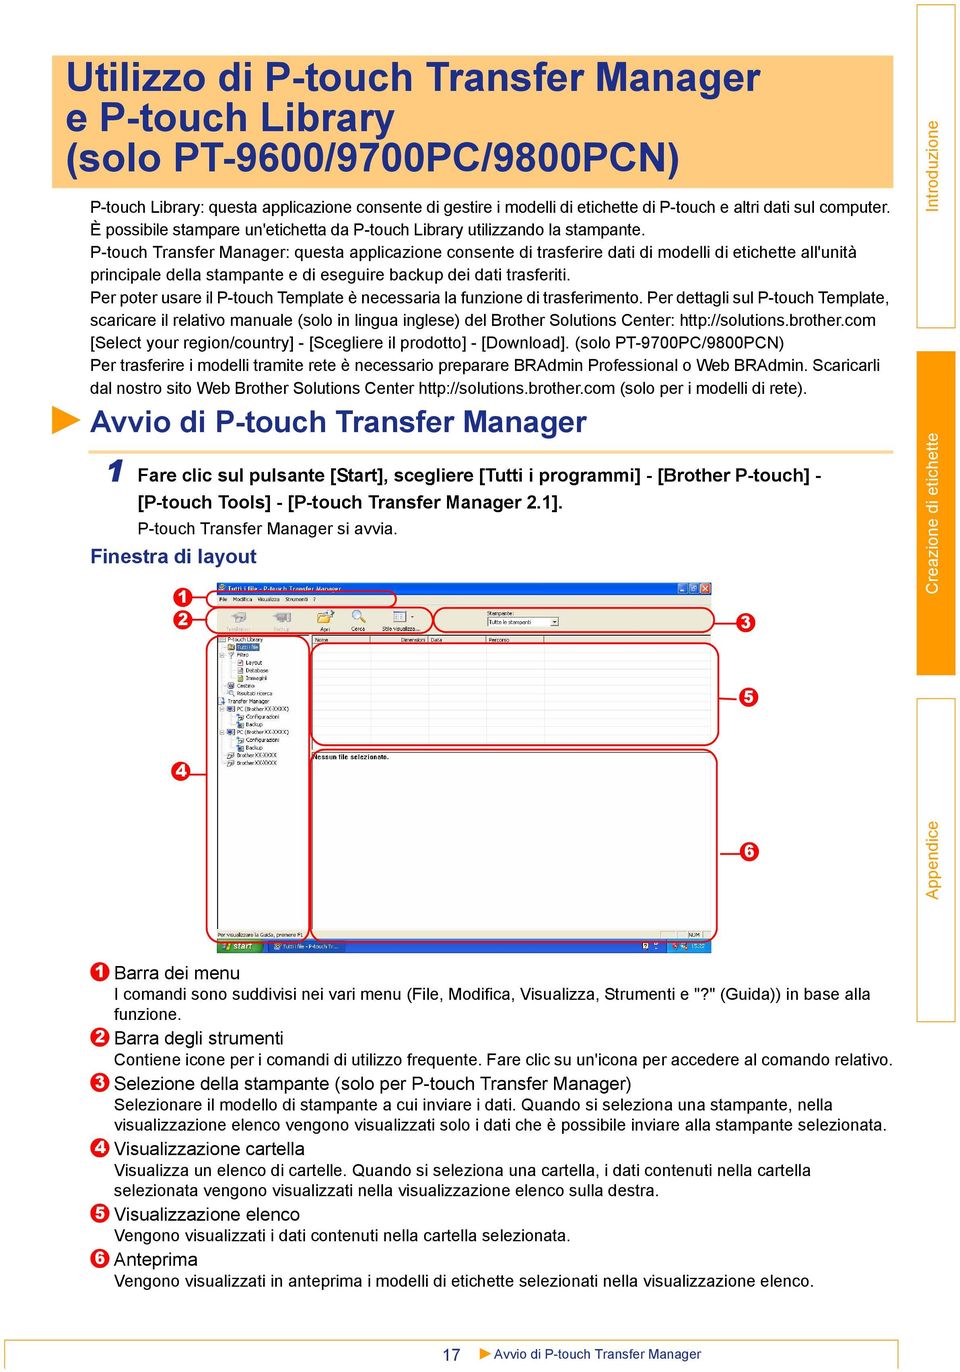 P-touch Transfer Manager: questa applicazione consente di trasferire dati di modelli di etichette all'unità principale della stampante e di eseguire backup dei dati trasferiti.